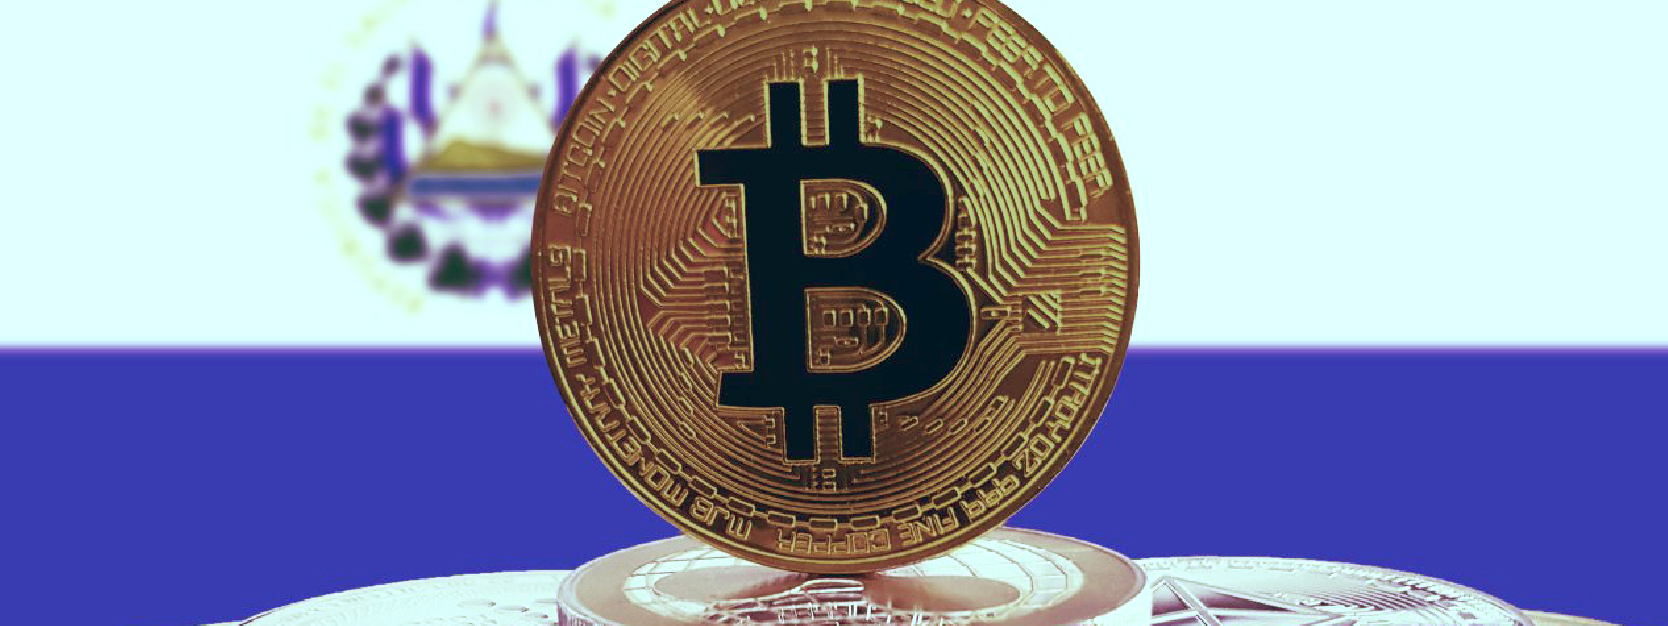 Bitcoin será moeda oficial em El Salvador, entenda riscos e benefícios esperados com a criptomoeda